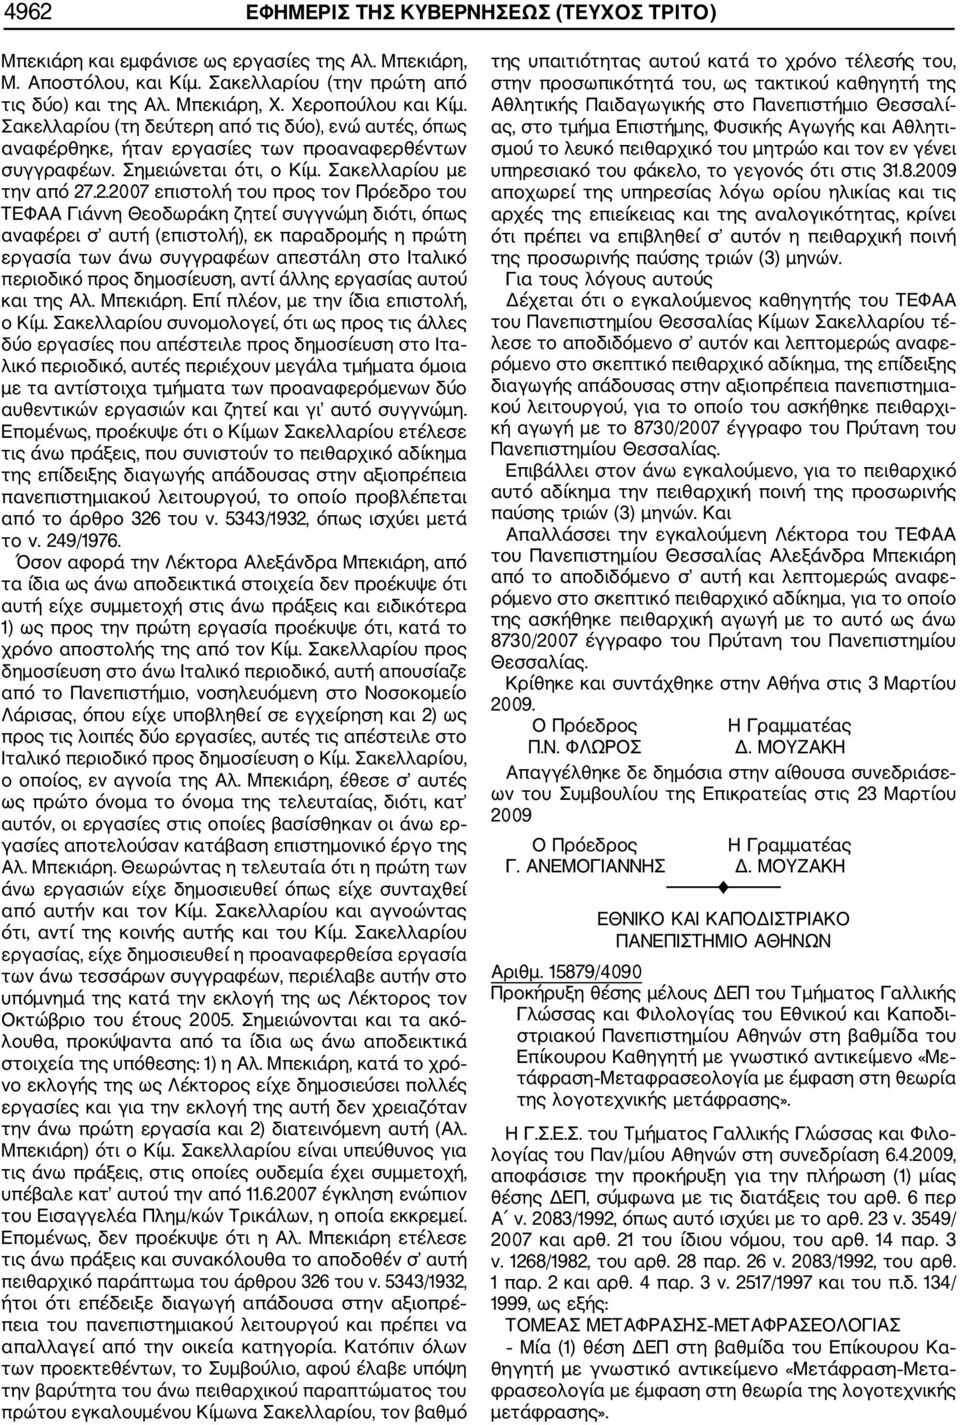 .2.2007 επιστολή του προς τον Πρόεδρο του ΤΕΦΑΑ Γιάννη Θεοδωράκη ζητεί συγγνώμη διότι, όπως αναφέρει σ αυτή (επιστολή), εκ παραδρομής η πρώτη εργασία των άνω συγγραφέων απεστάλη στο Ιταλικό περιοδικό